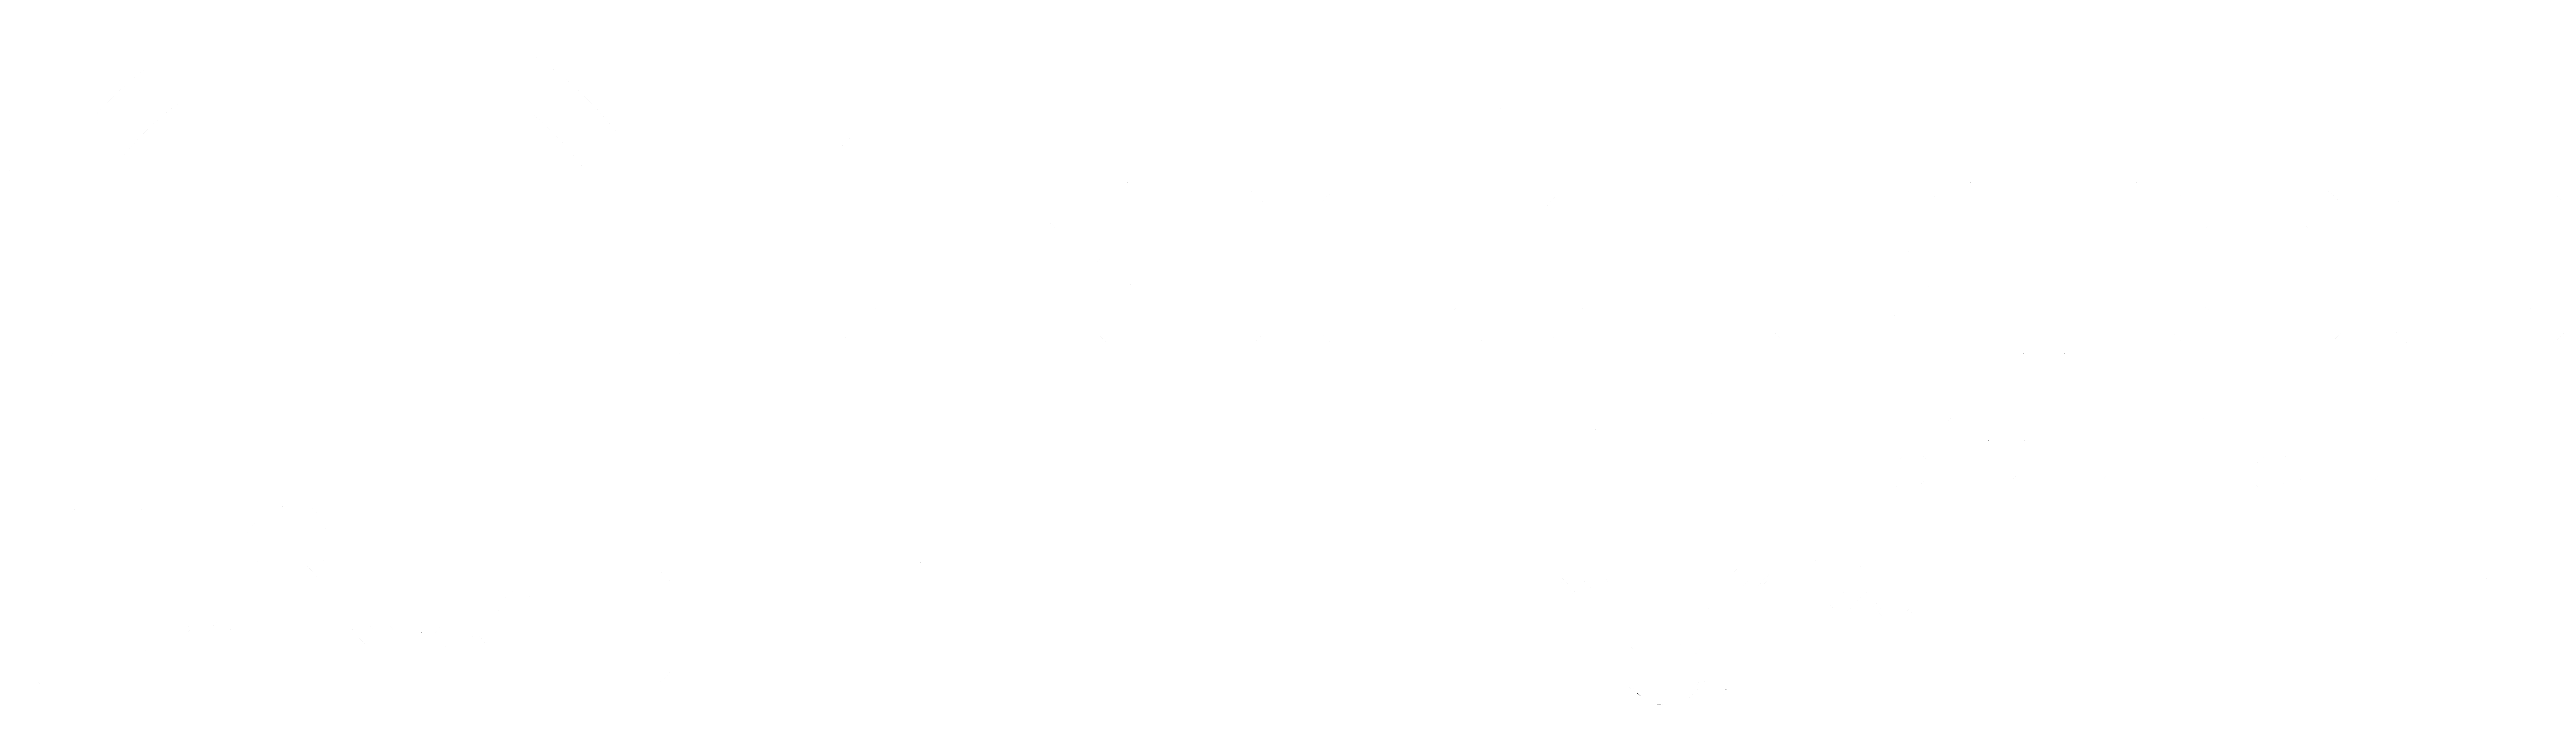 Gadgetoo.Com.bd